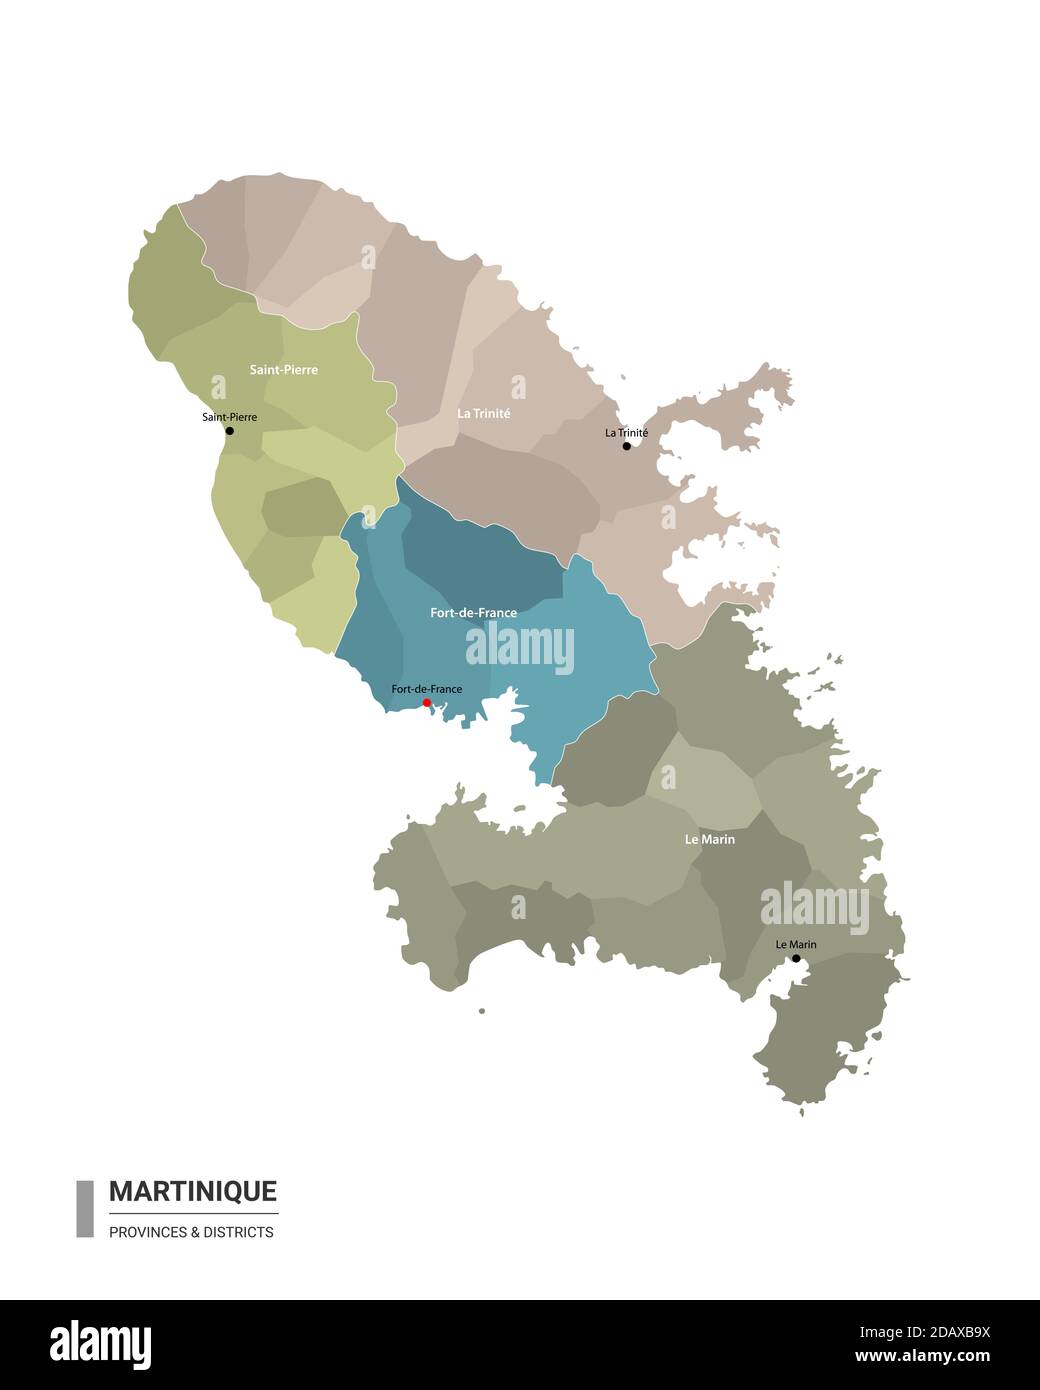 Martinique carte détaillée avec subdivisions. Carte administrative de la Martinique avec le nom des districts et des villes, coloré par les États et l'administration Illustration de Vecteur